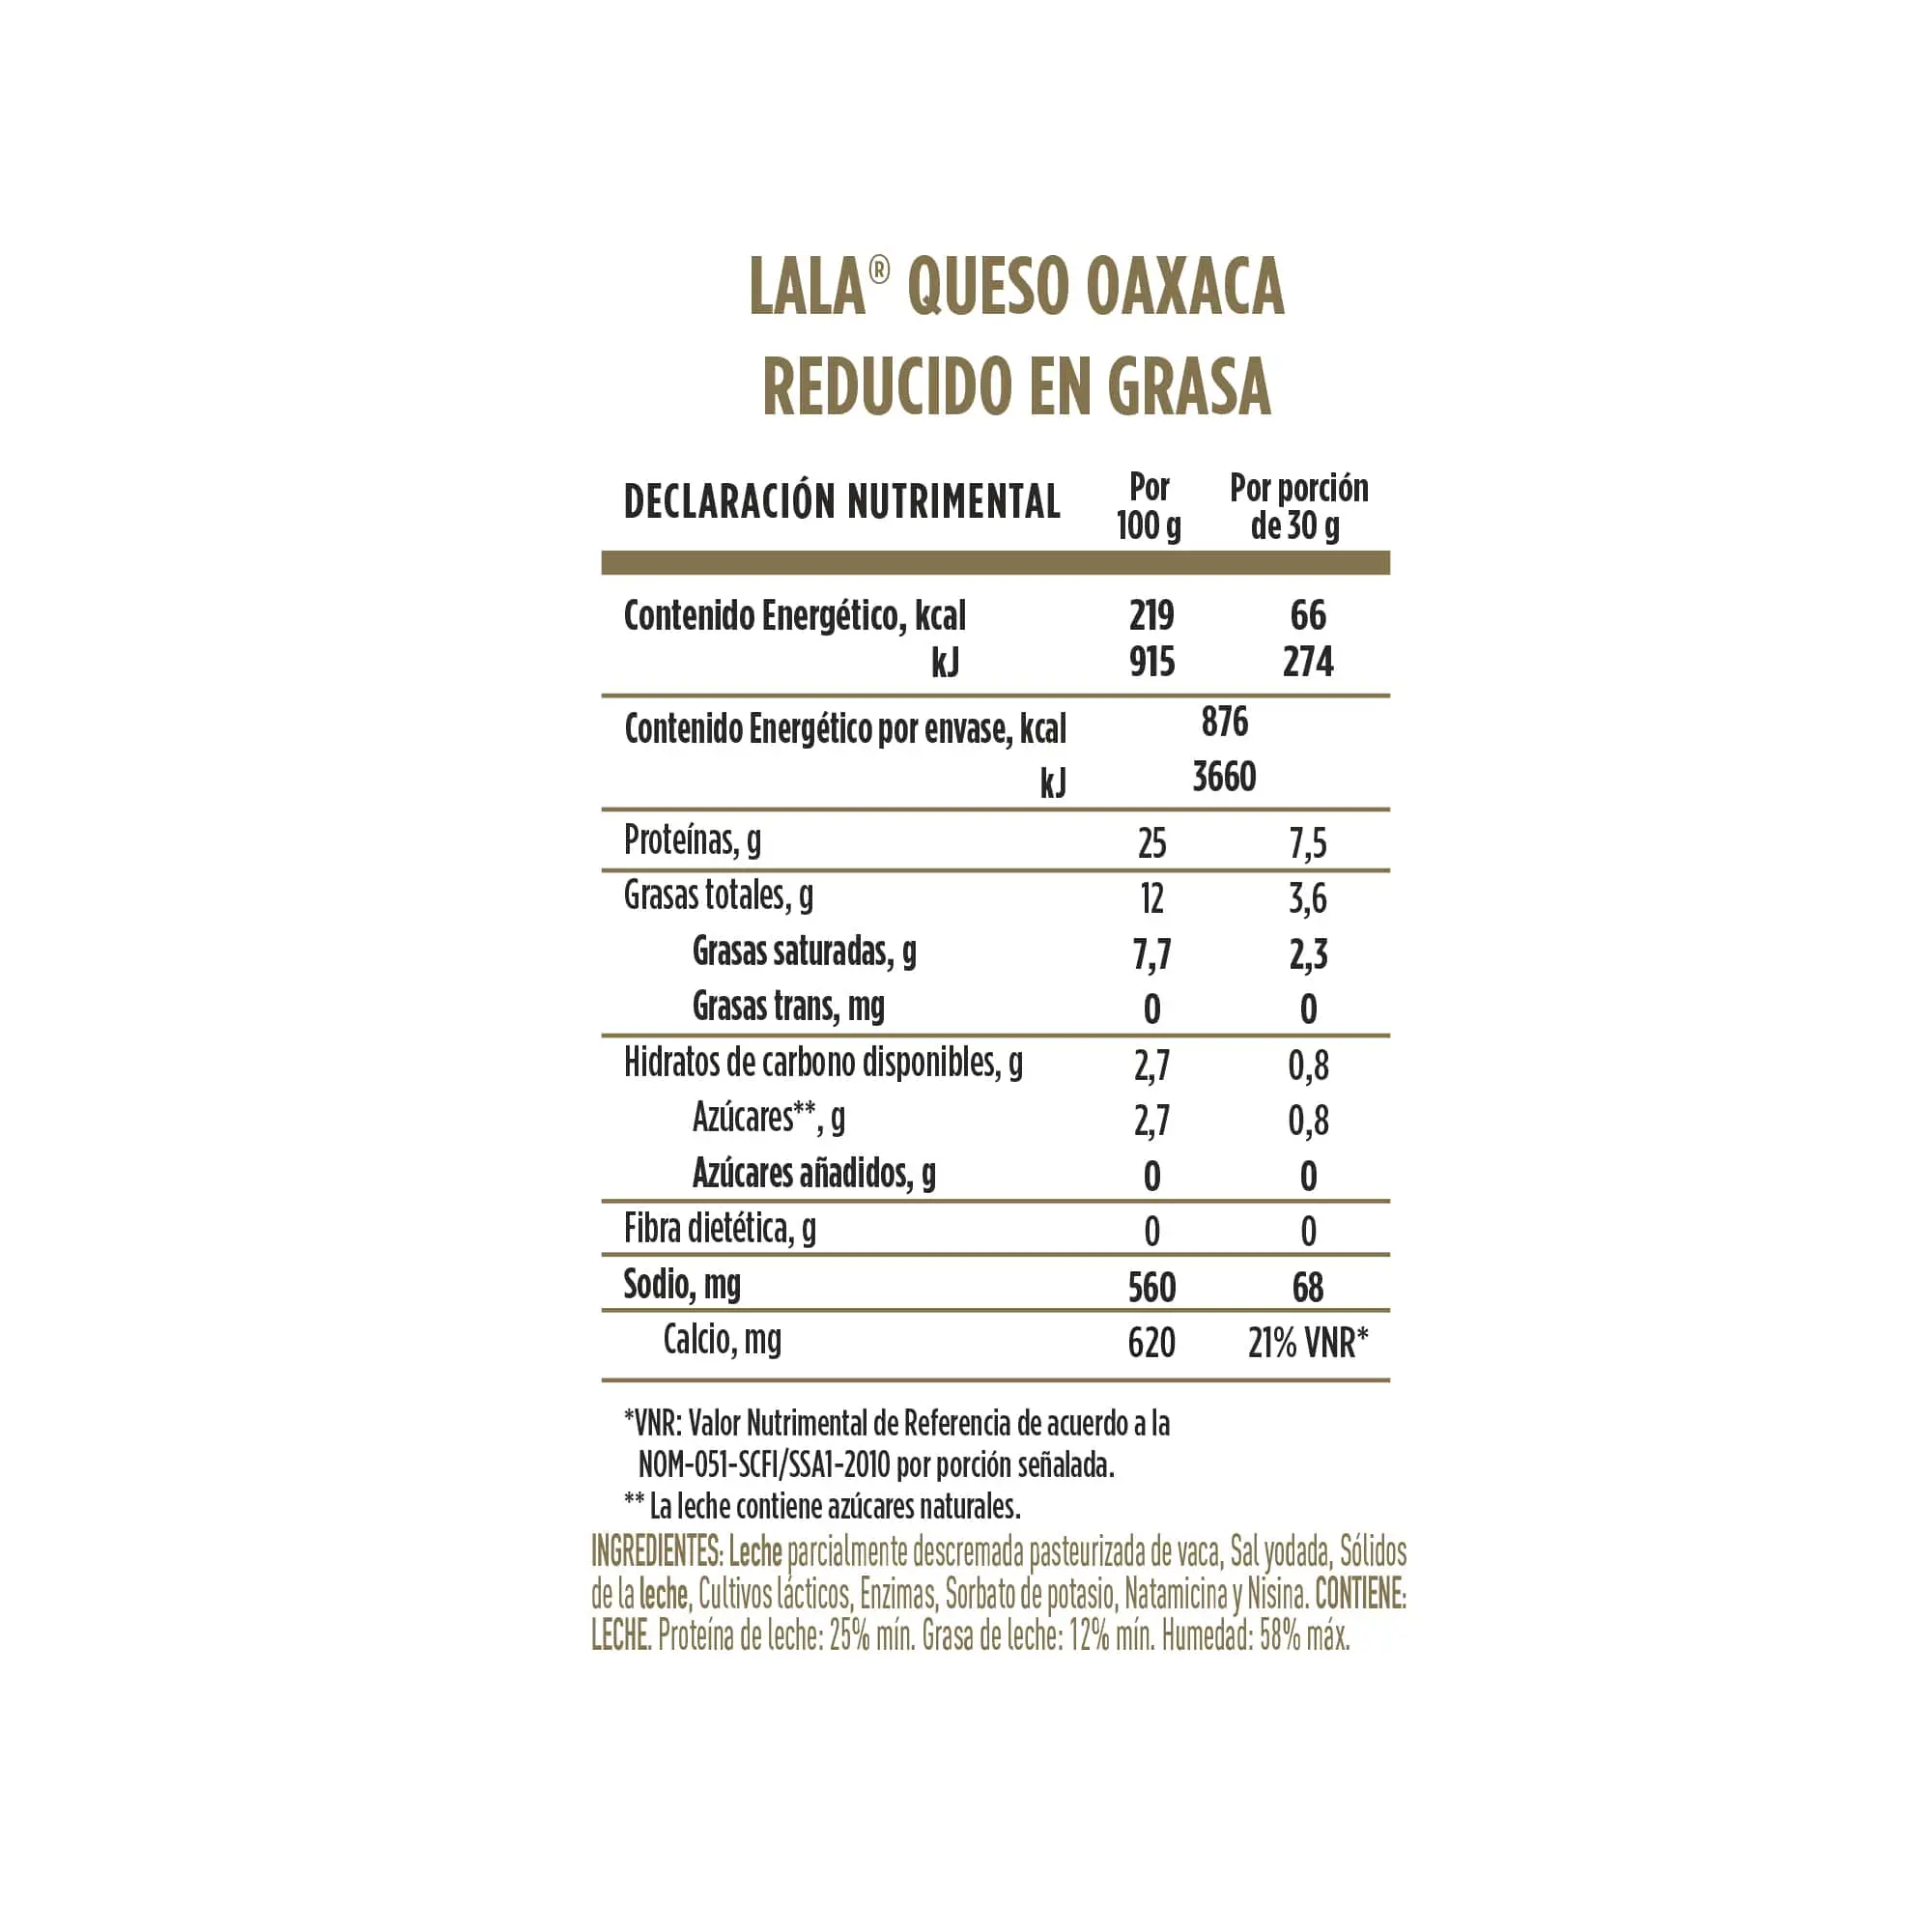 calorias del queso oaxaca - Cuántas calorías hay en 100 g de queso Oaxaca